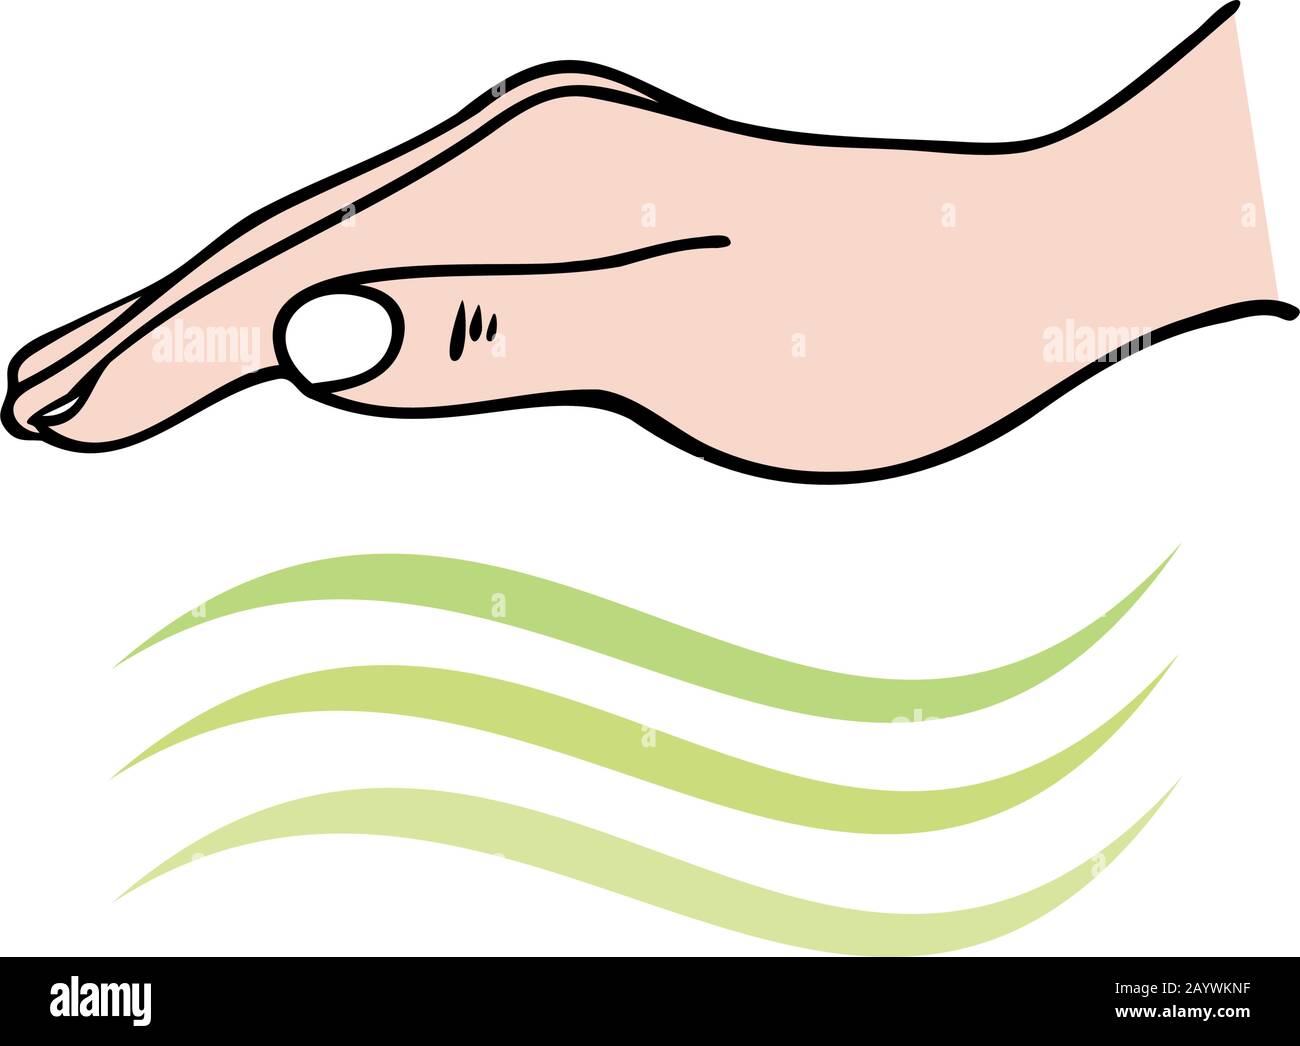 Handheilung, die Hand zeigt, die univerale Energiewellen zur emotionalen oder körperlichen Heilung sendet - für Reiki, Alternative Medizin Stock Vektor